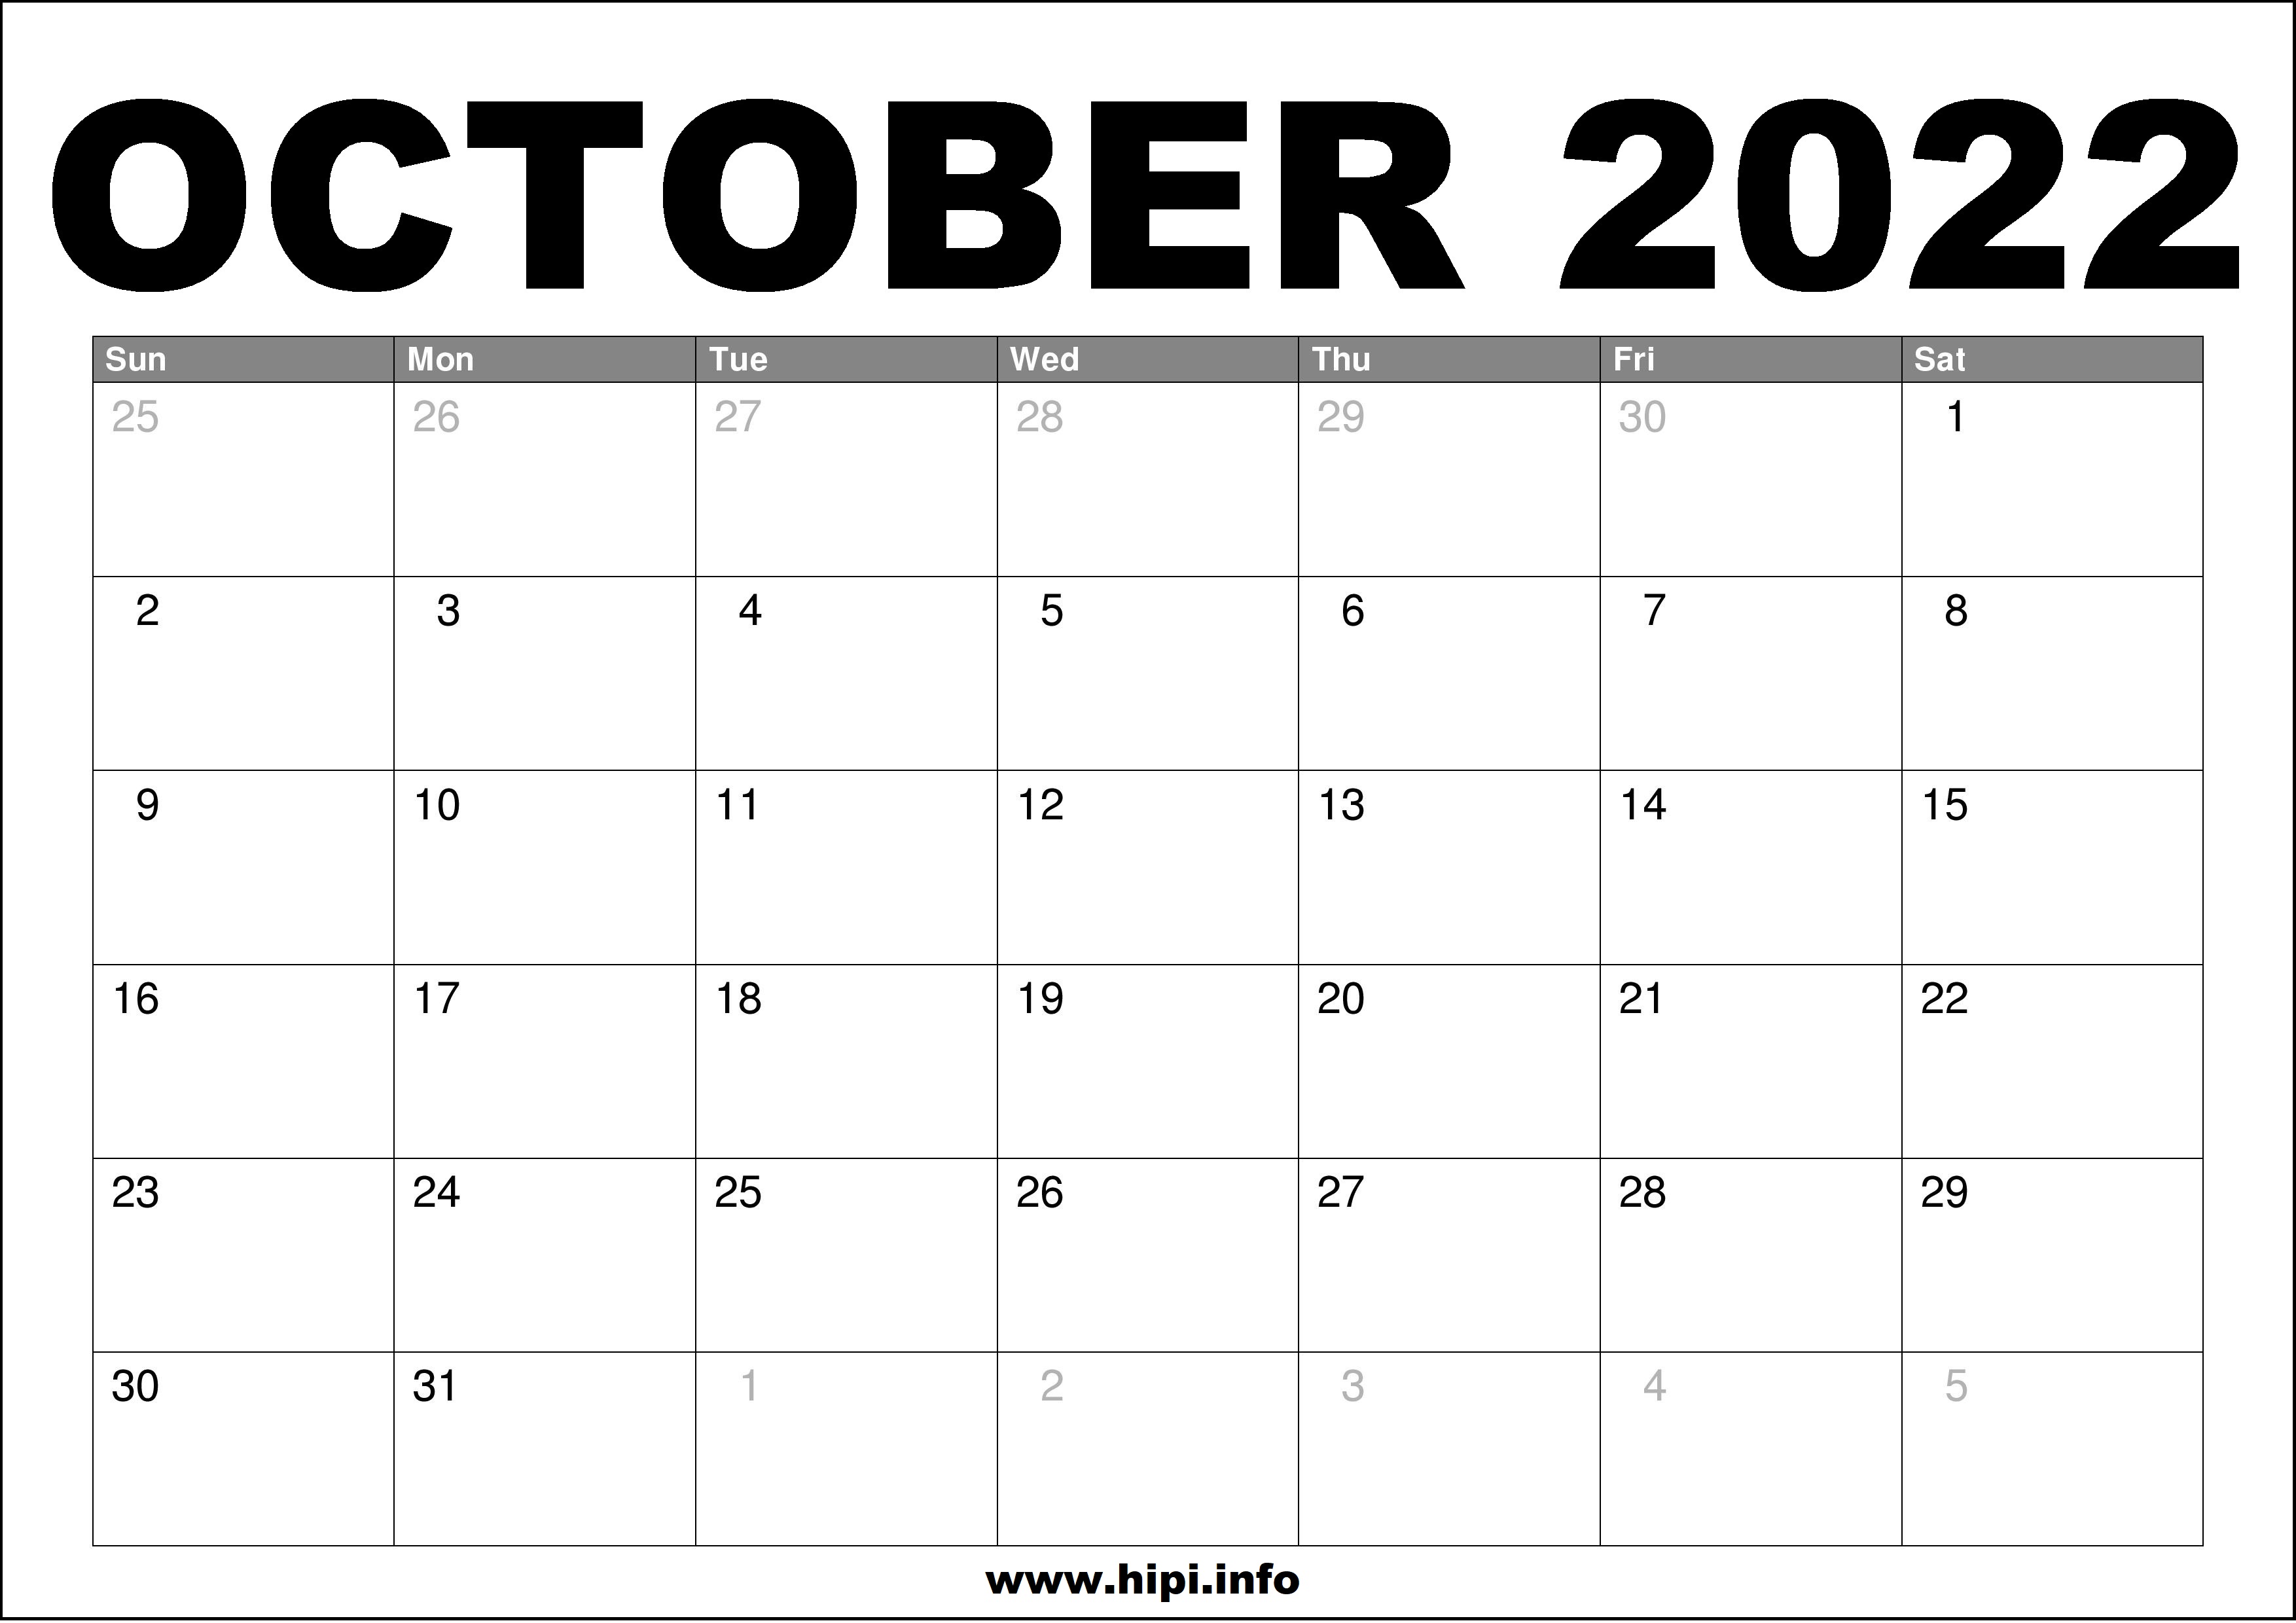 Month Of October 2022 Calendar October 2022 Calendar Printable Free - Hipi.info | Calendars Printable Free